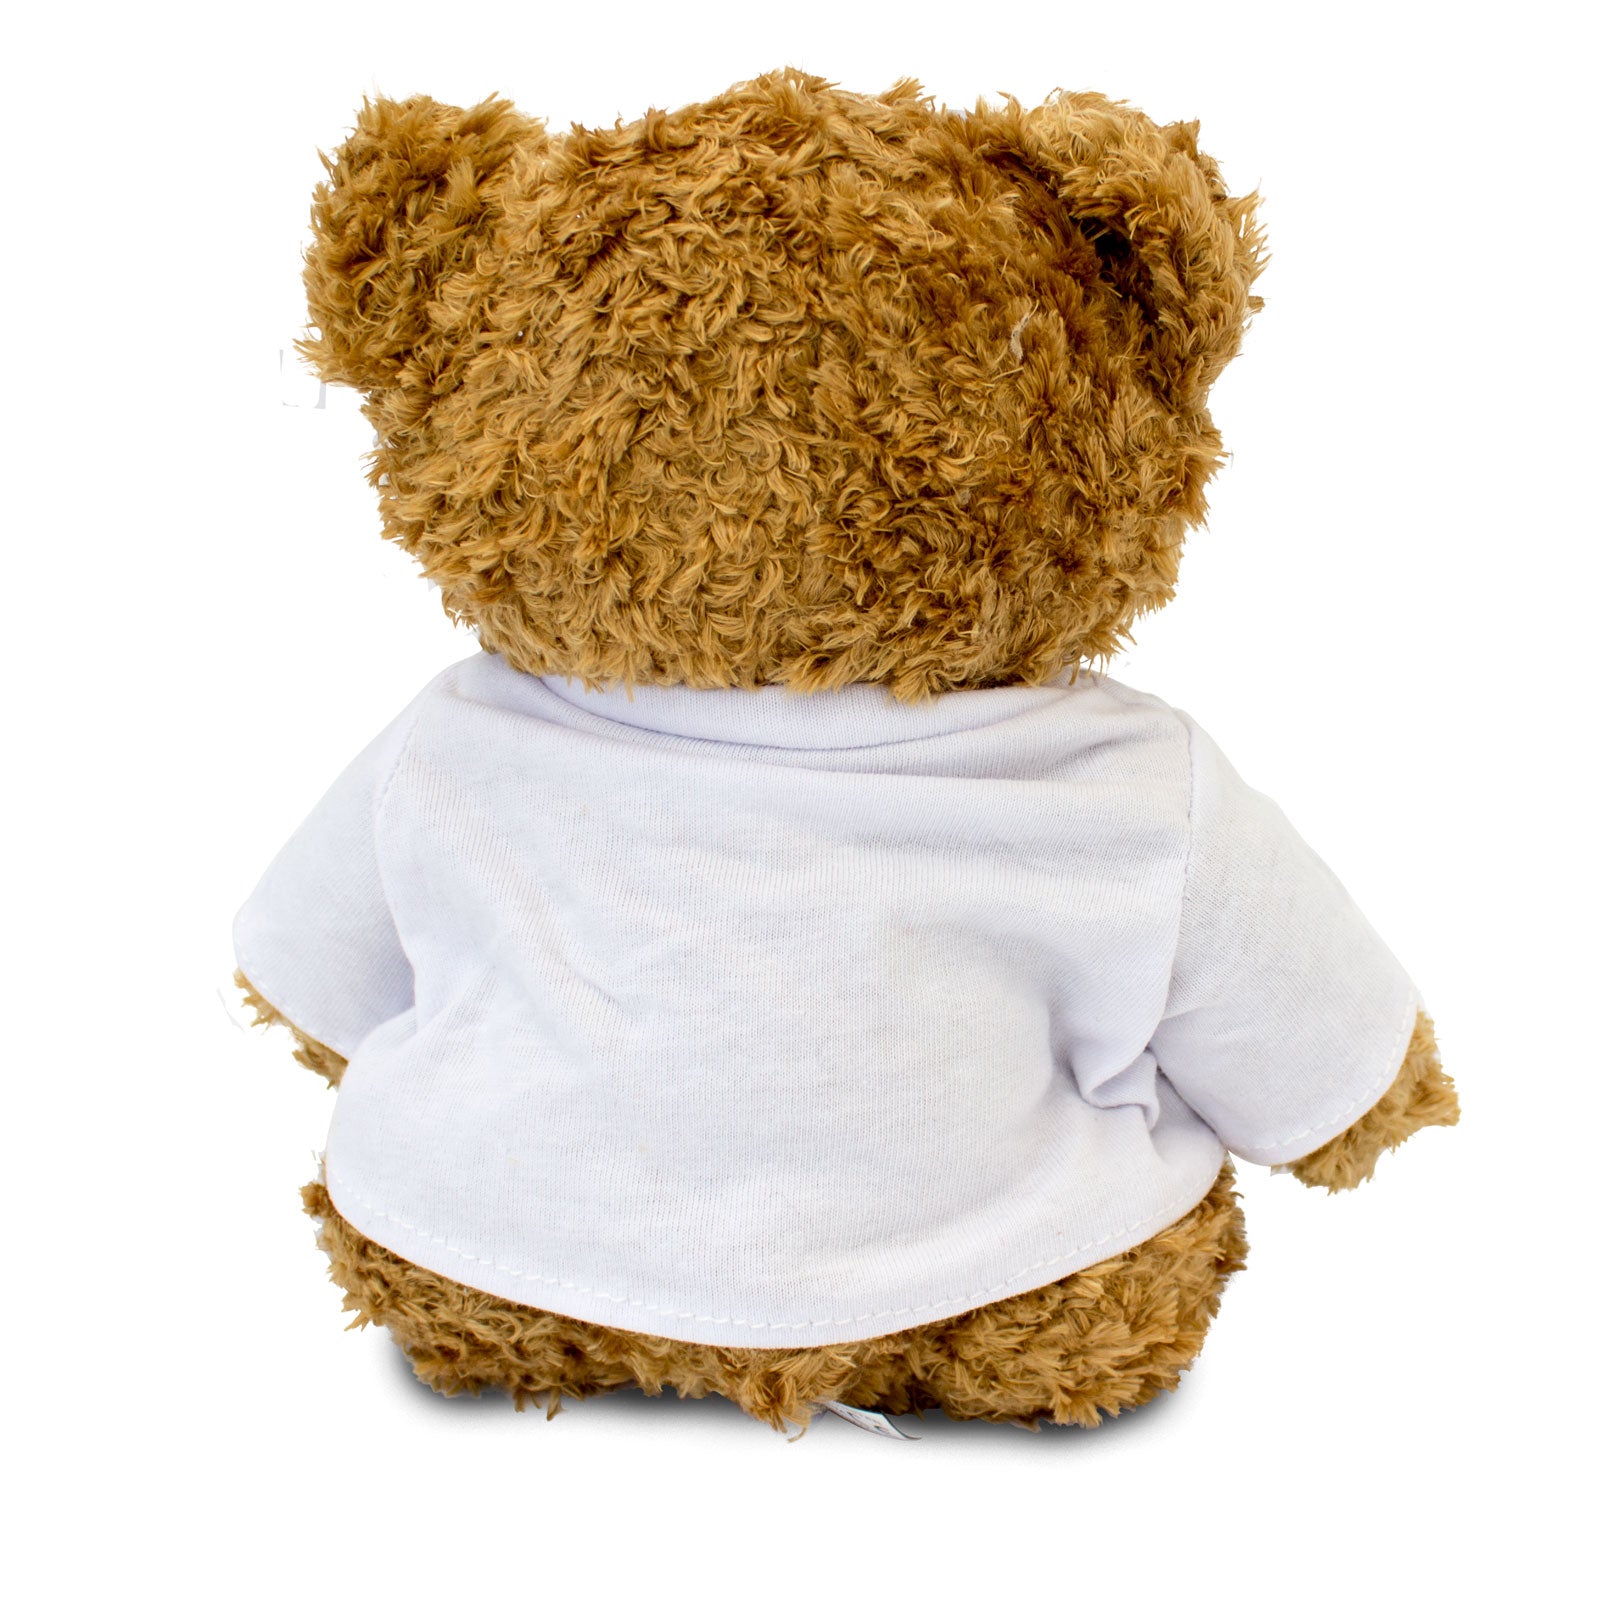 Get Well Soon Fionn- Teddy Bear